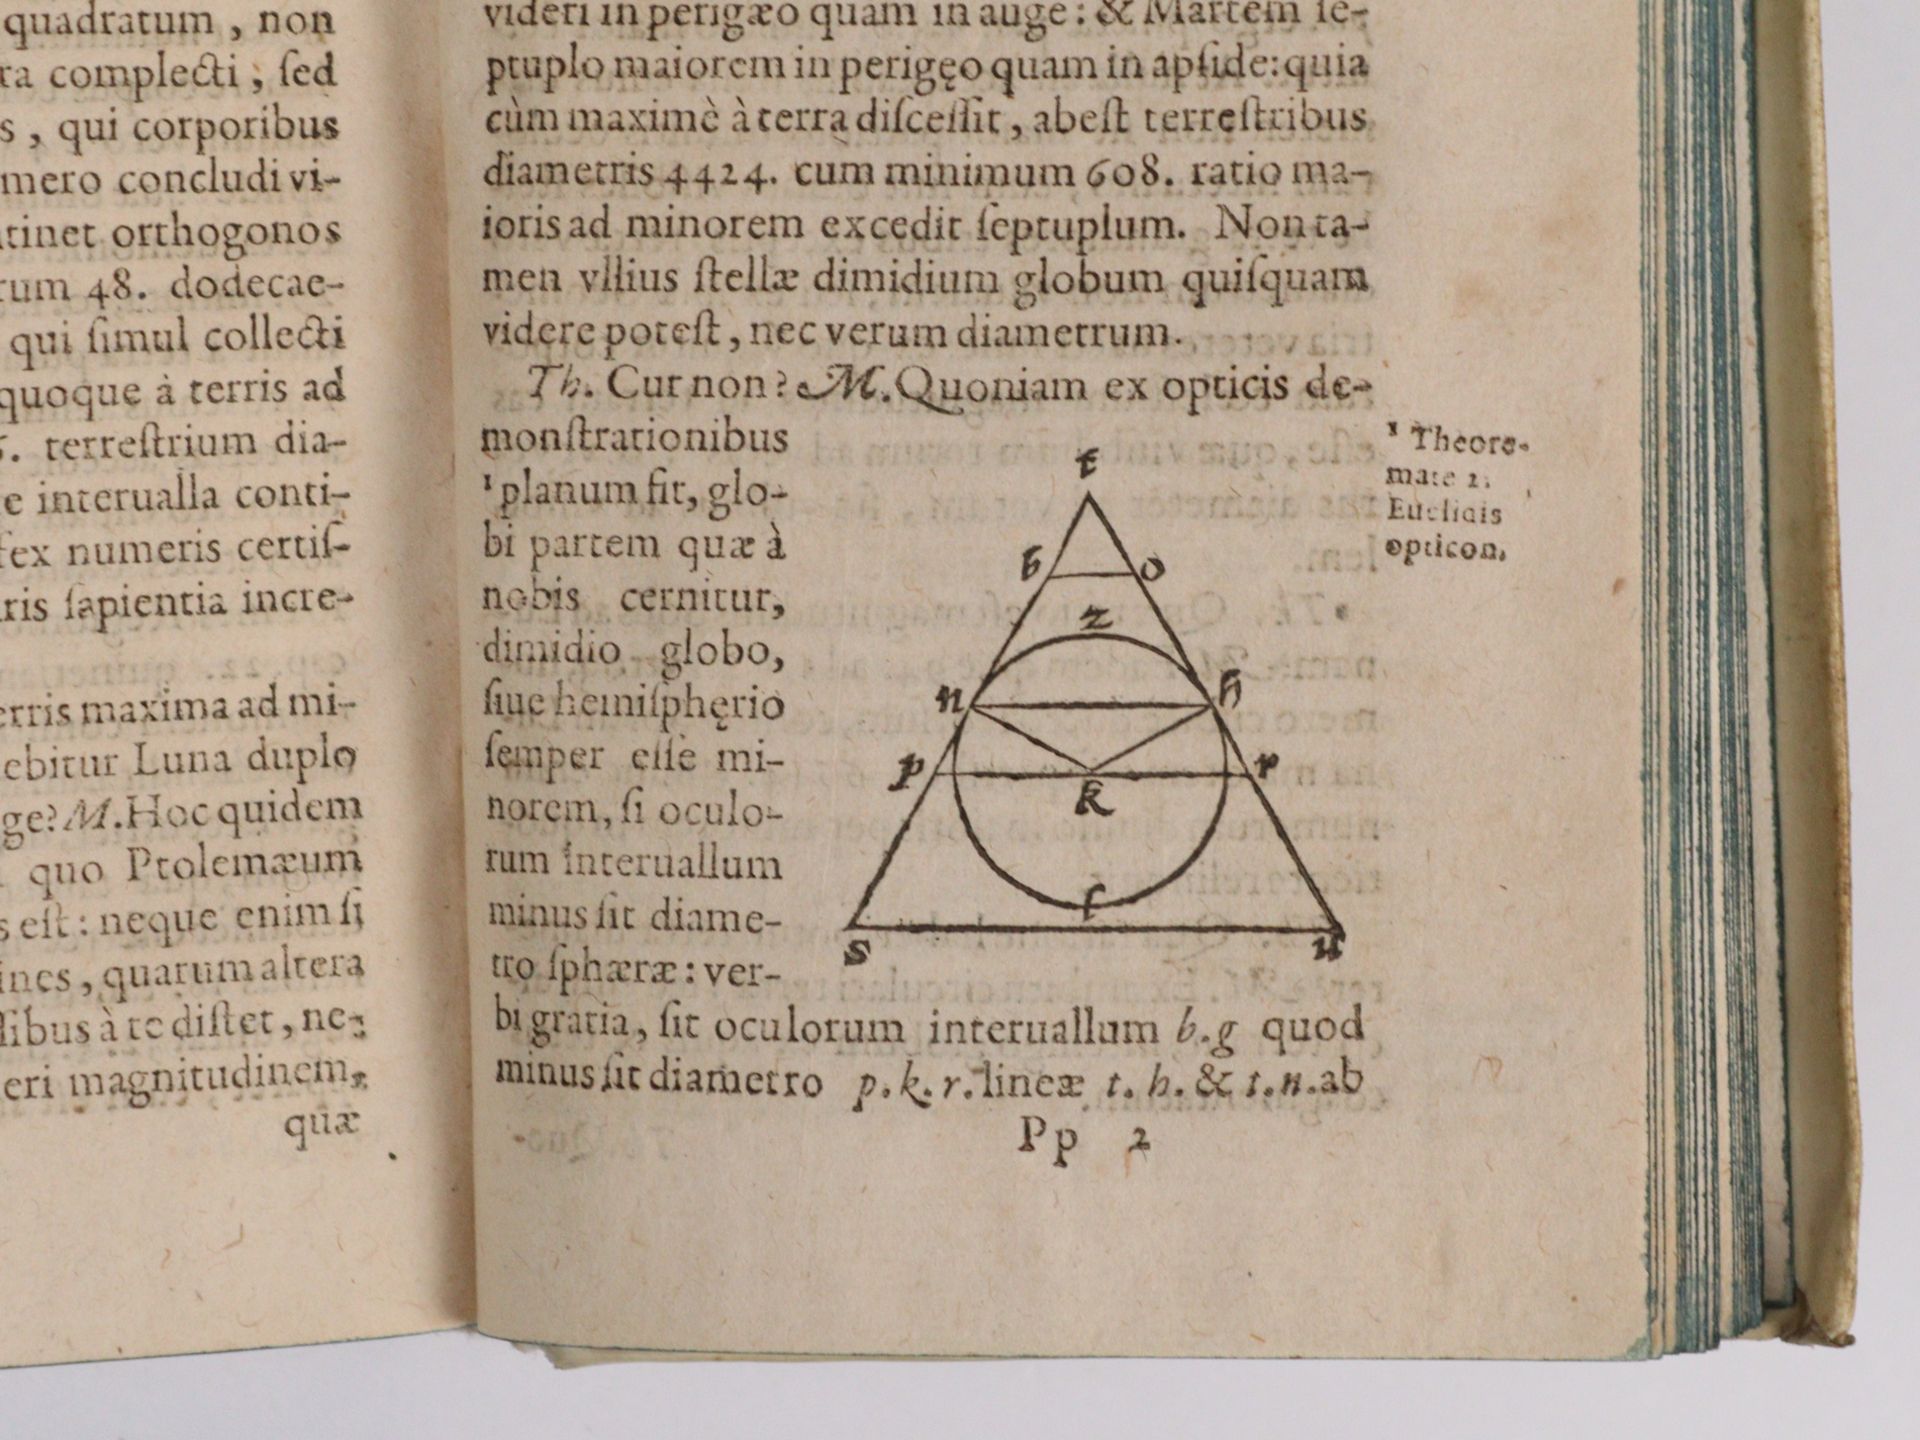 Bodino, Ioan - Universae Naturae (1605) - Bild 2 aus 8